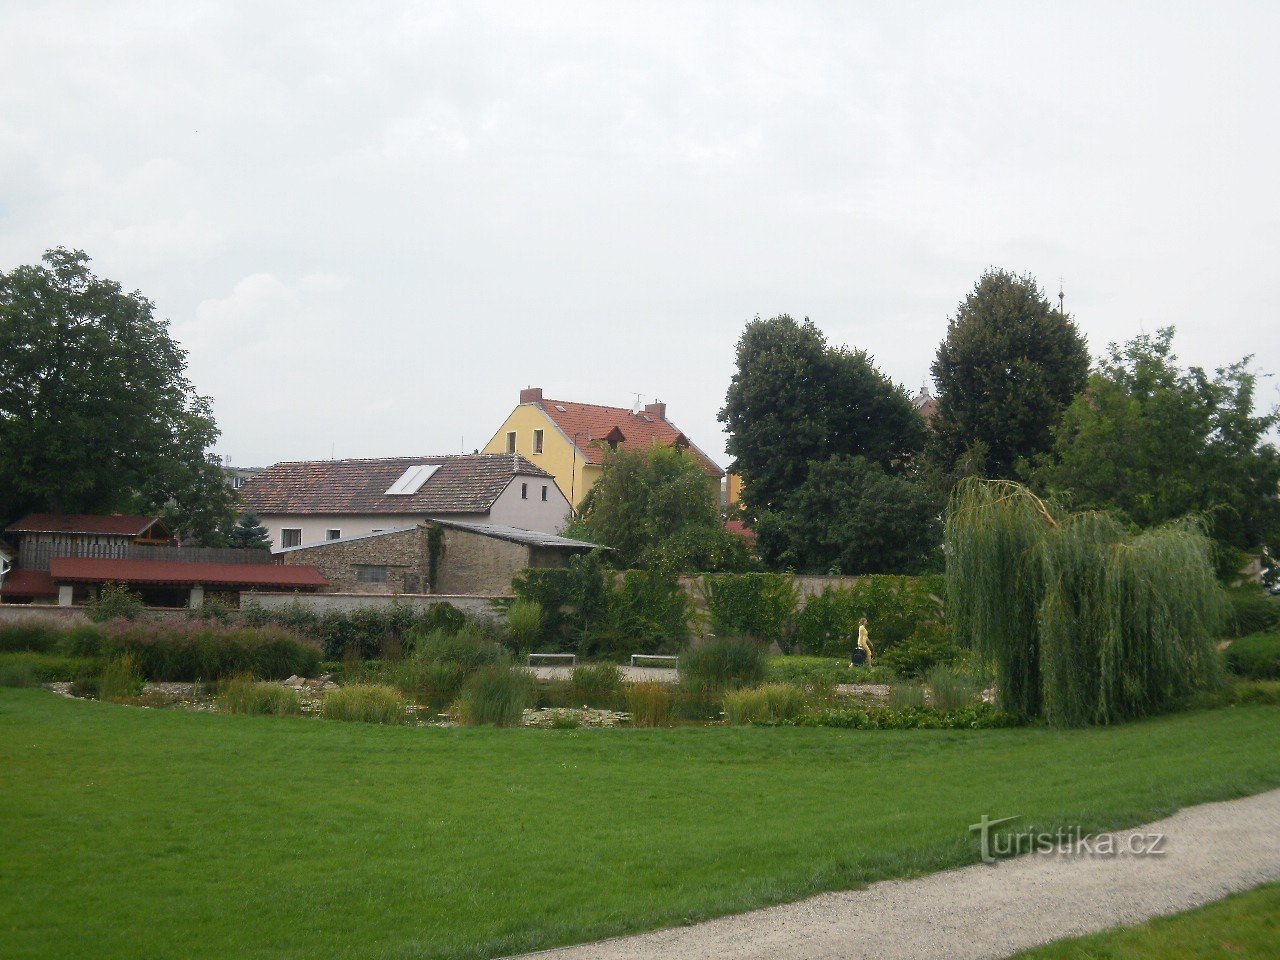 Litoměřice est une ville au confluent de l'Elbe et de l'Ohře